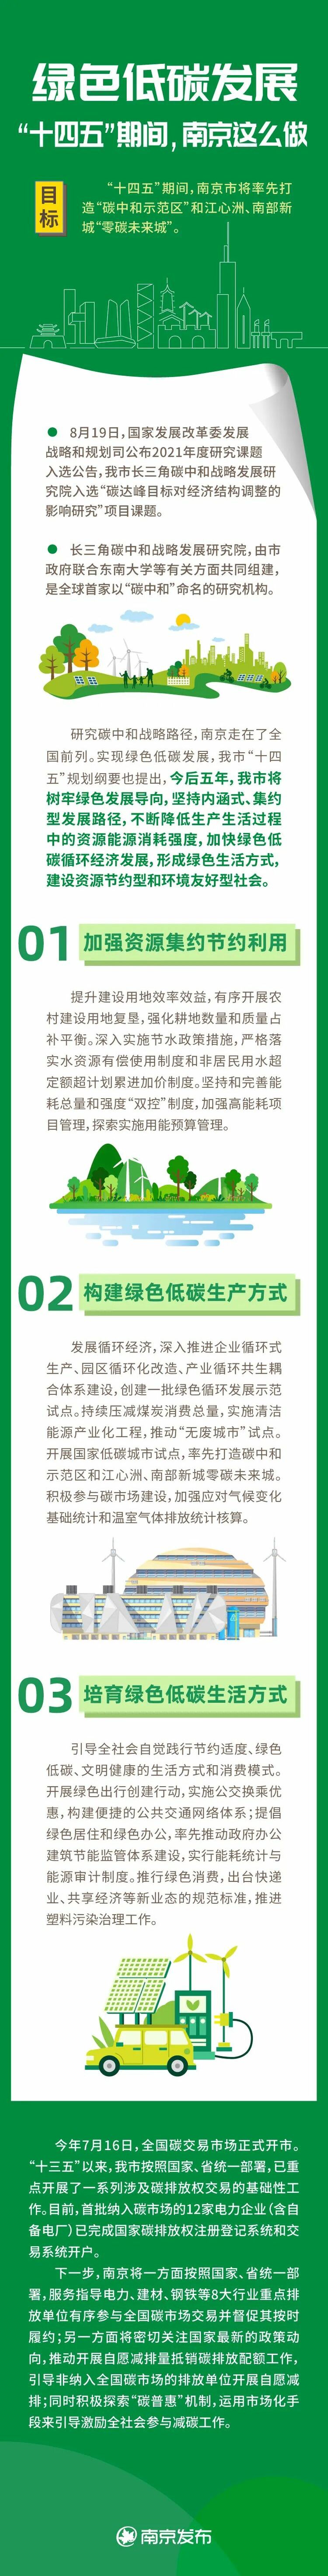 南京市全力打造“低碳先锋城市” 推动美丽古都建设展现新图景